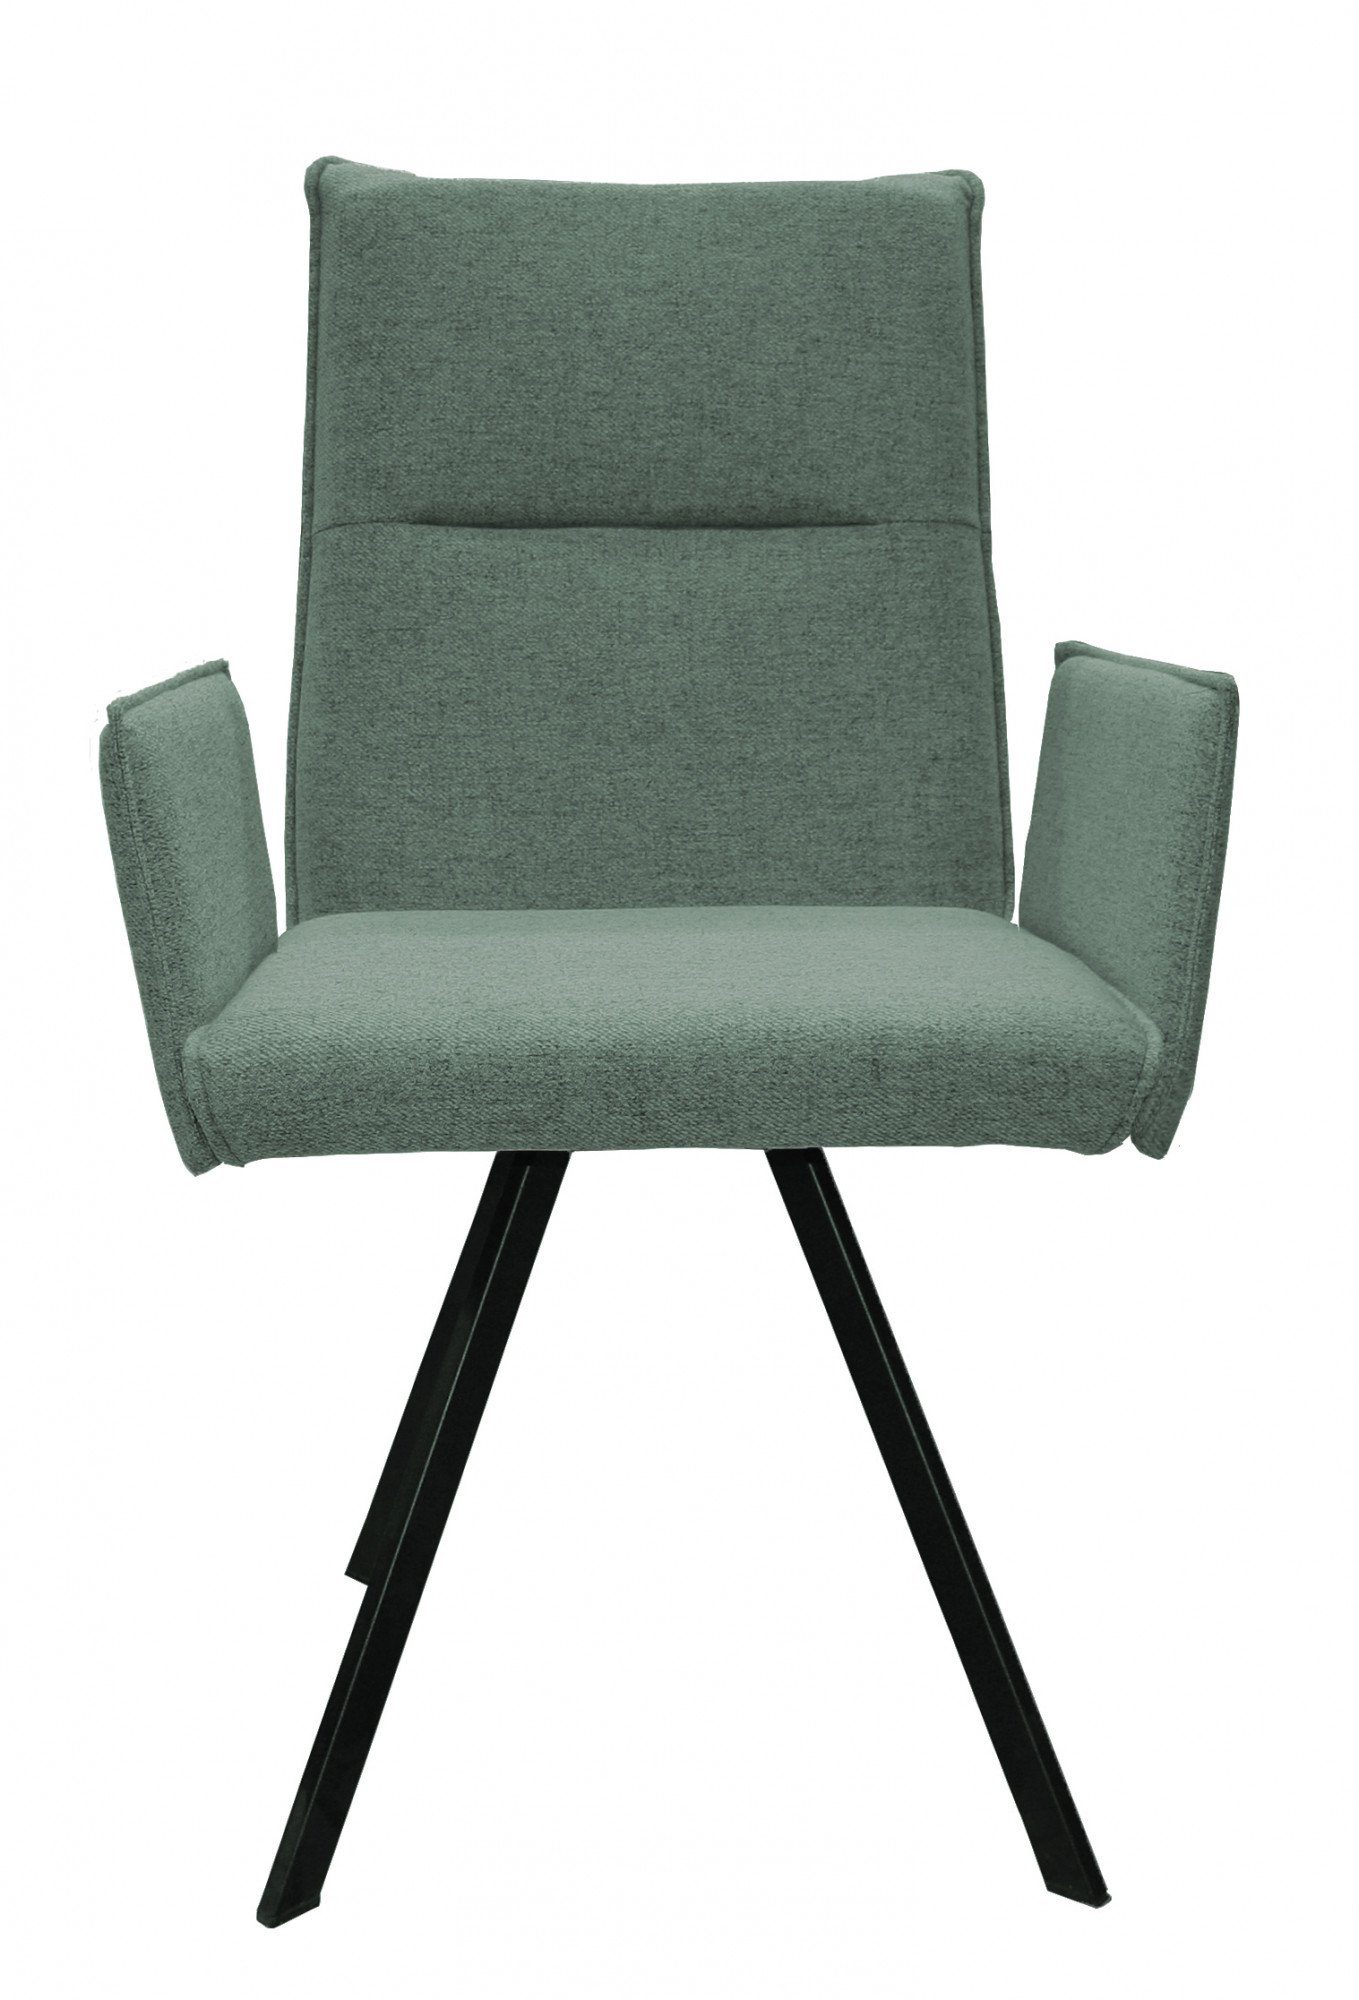 home affaire stoel met armleuningen sava metalen frame (set, 2 stuks) groen